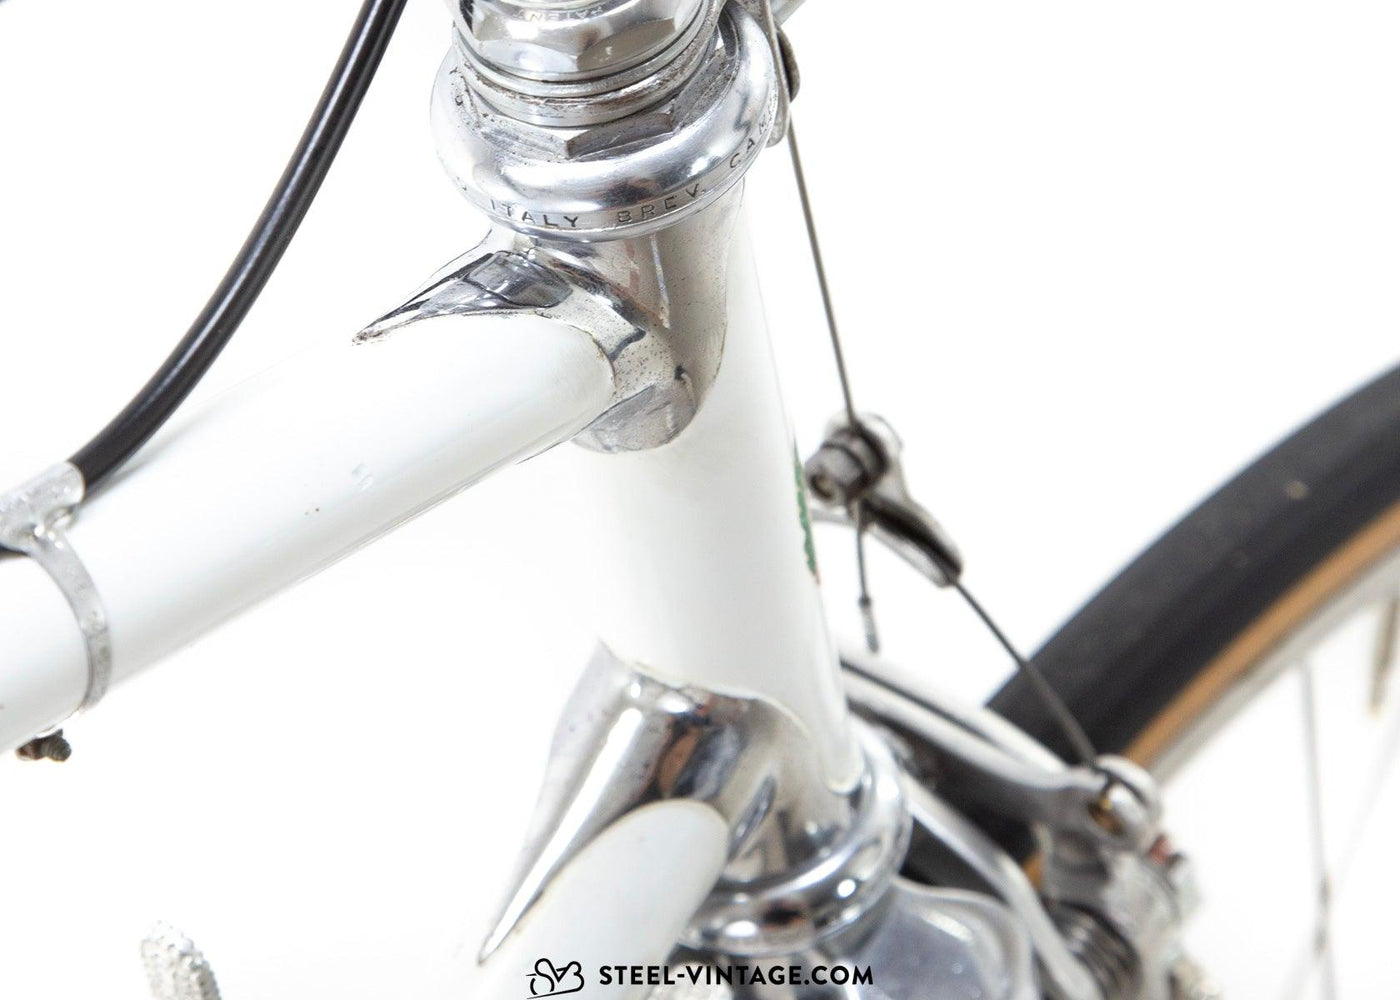 Diego Marabelli Vintage Road Bicycle 1960s - Steel Vintage Bikes